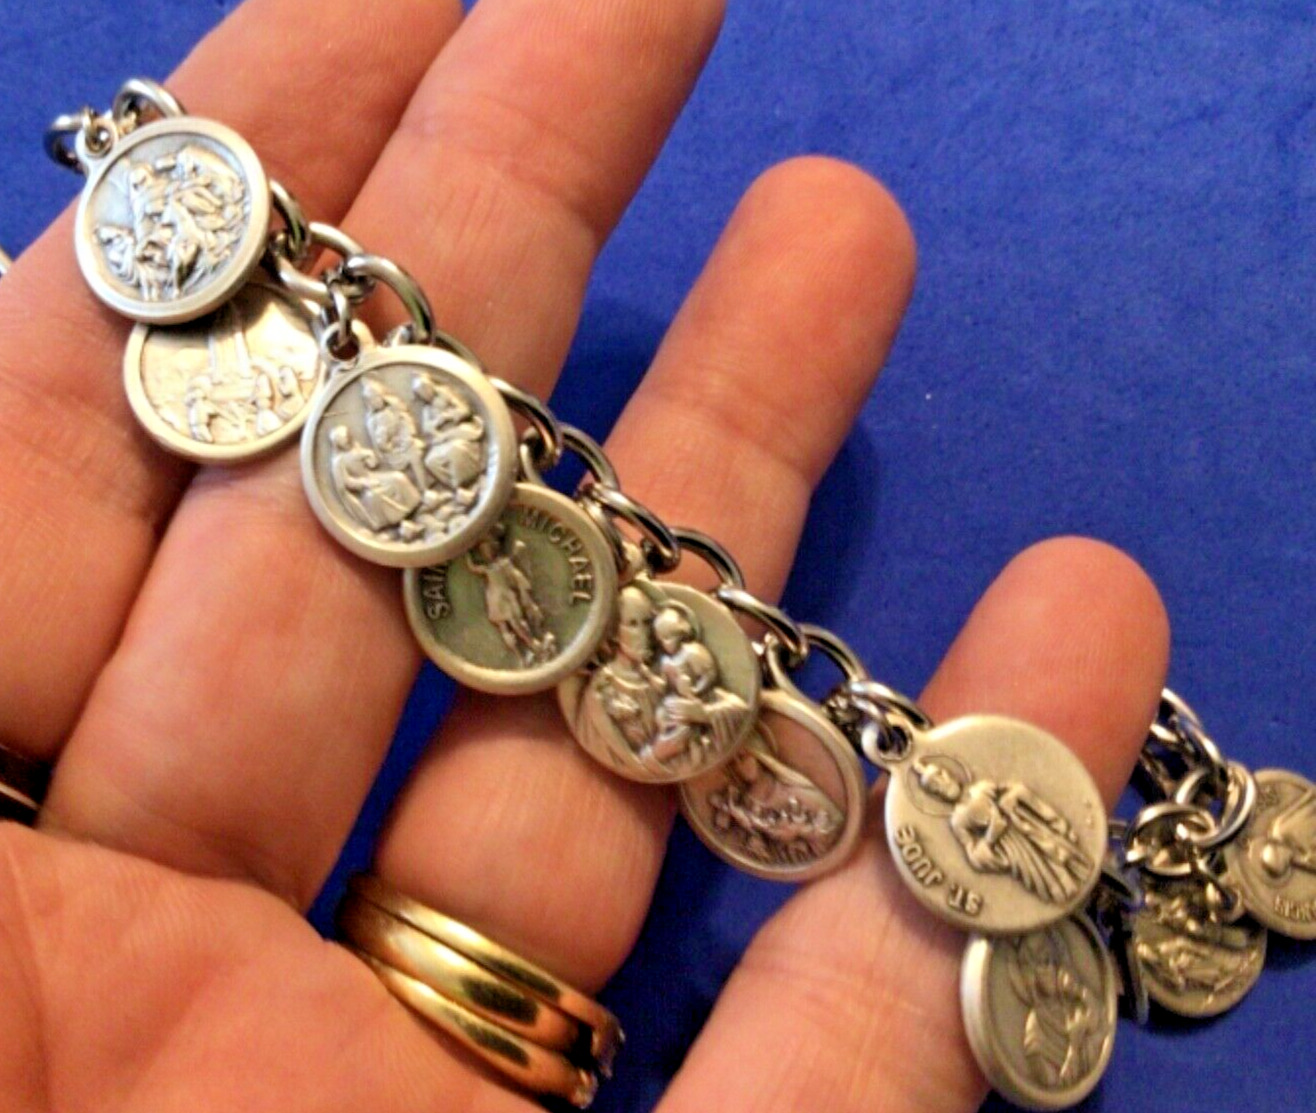 Handmade Saint Medal Charm Bracelet Lot Stainless Steel Chain 7.5” Saints Custom